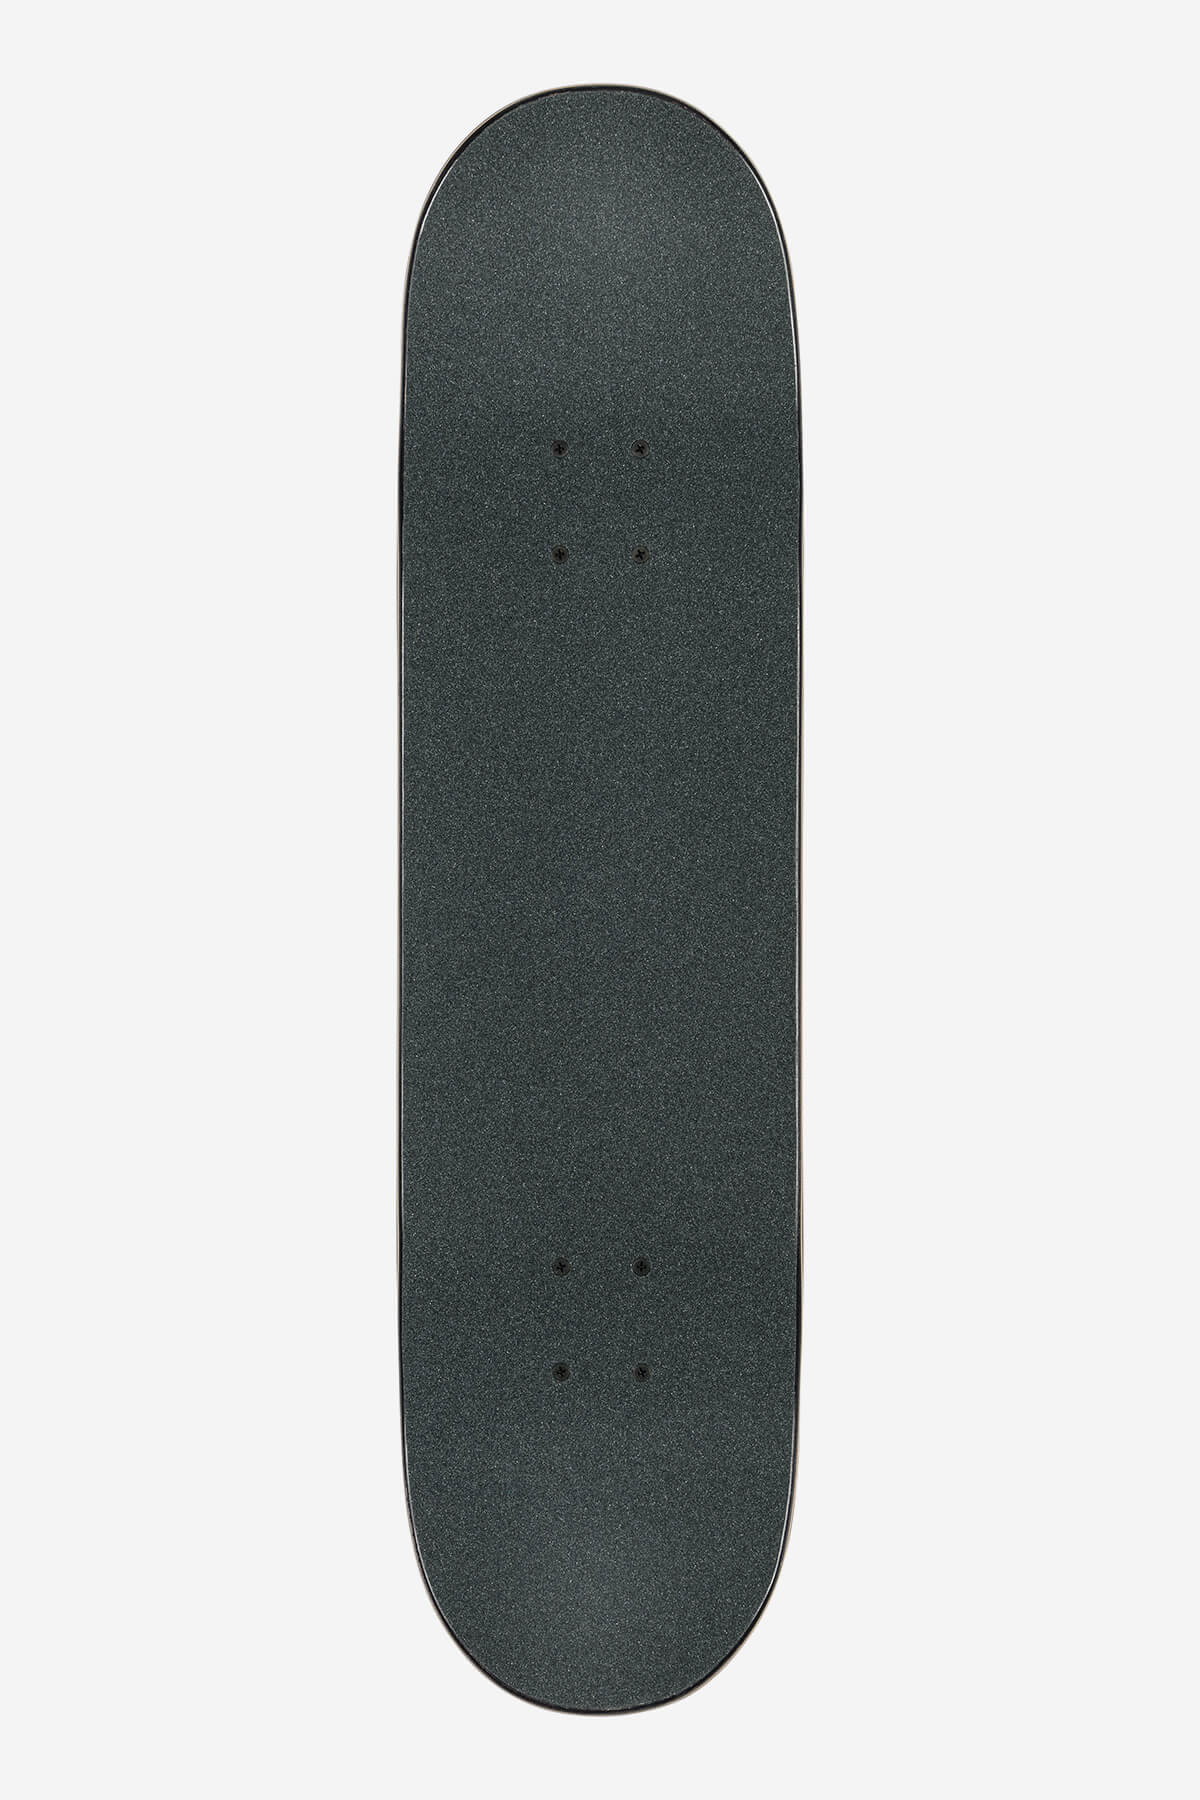 Globe Skateboard completes G1 Argo 8.125" Complete Skateboard in Black/Camo